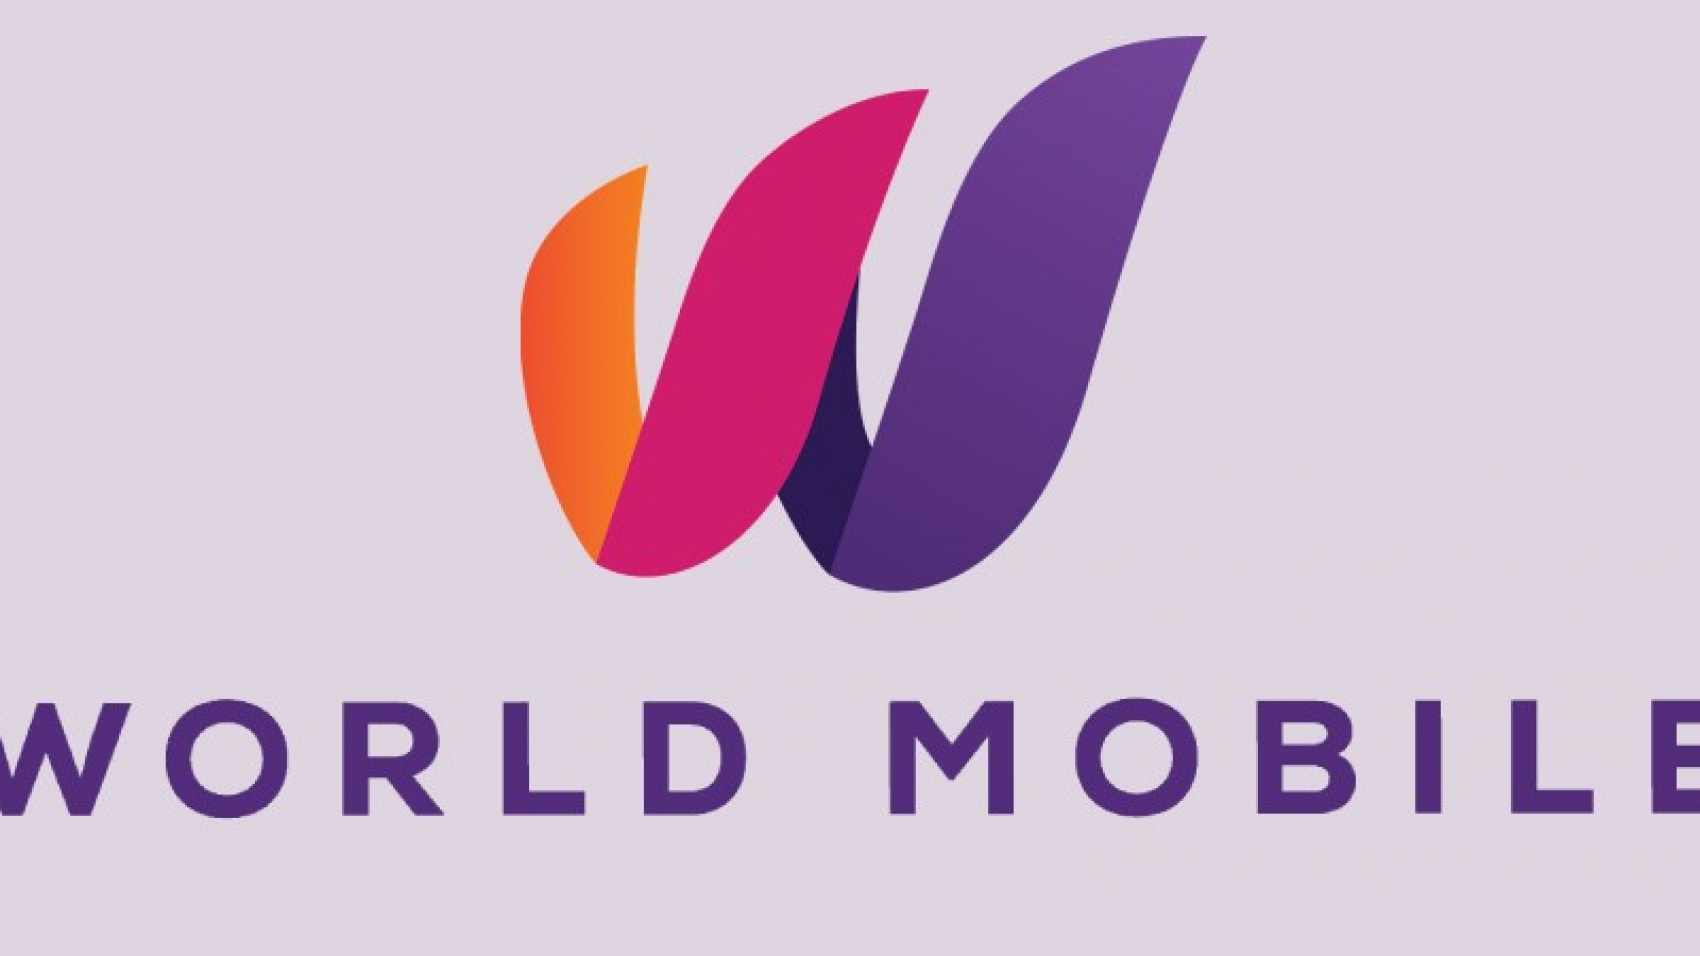 World Mobile развернет сеть из дирижаблей для раздачи интернета в Африке